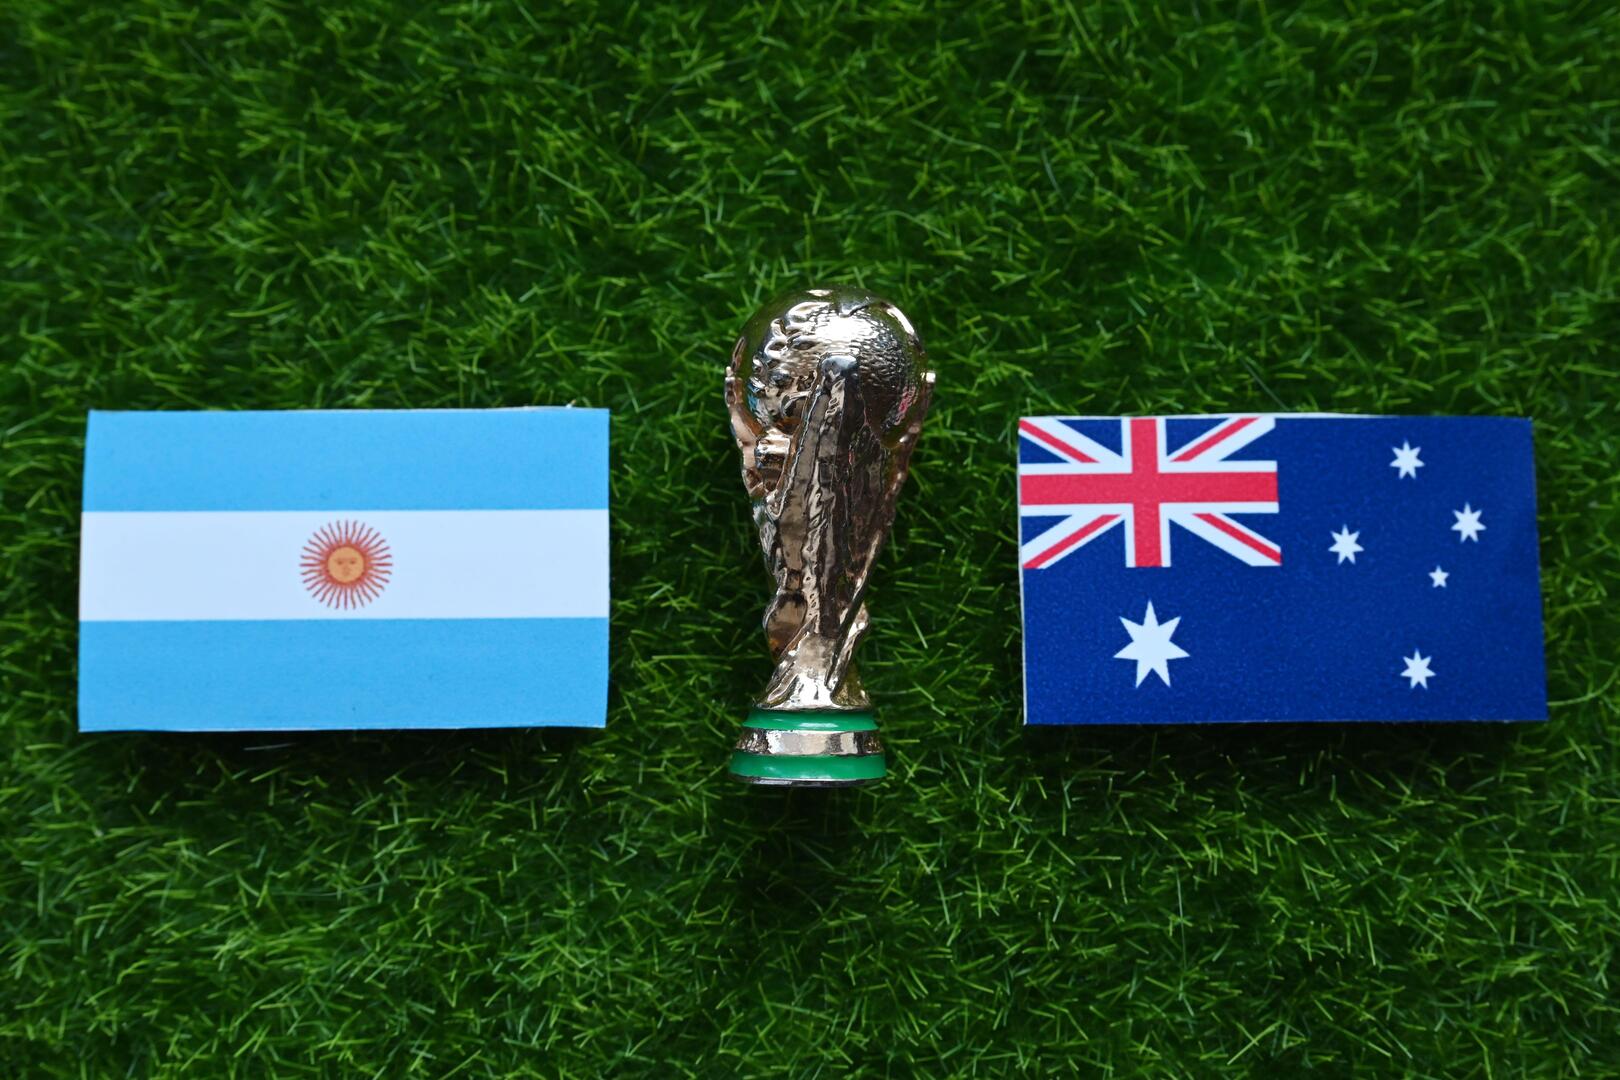 التشكيلة المتوقعة للأرجنتين ضد أستراليا